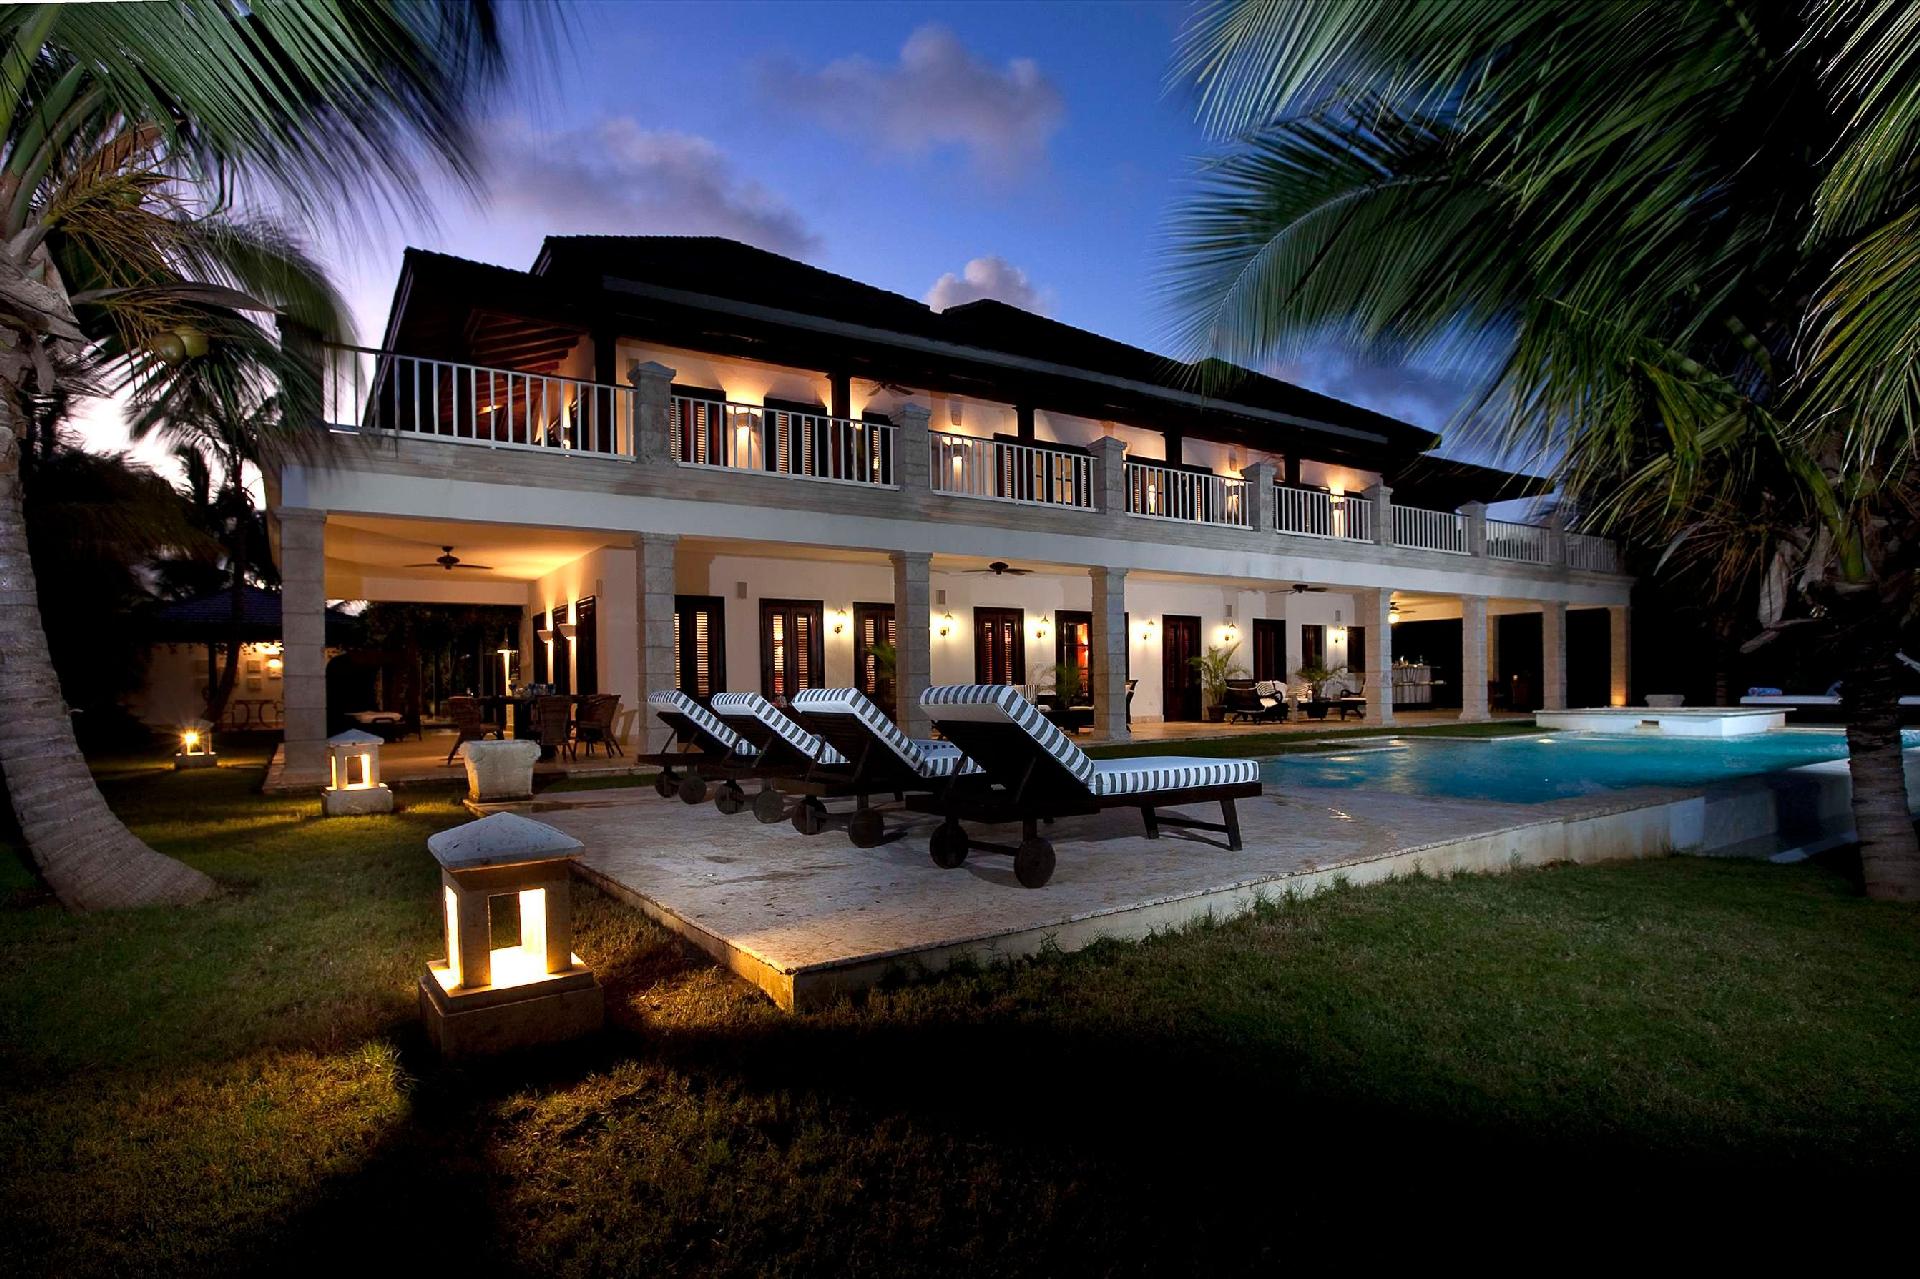 Ferienhaus in Punta Cana mit Privatem Pool Ferienhaus in Mittelamerika und Karibik